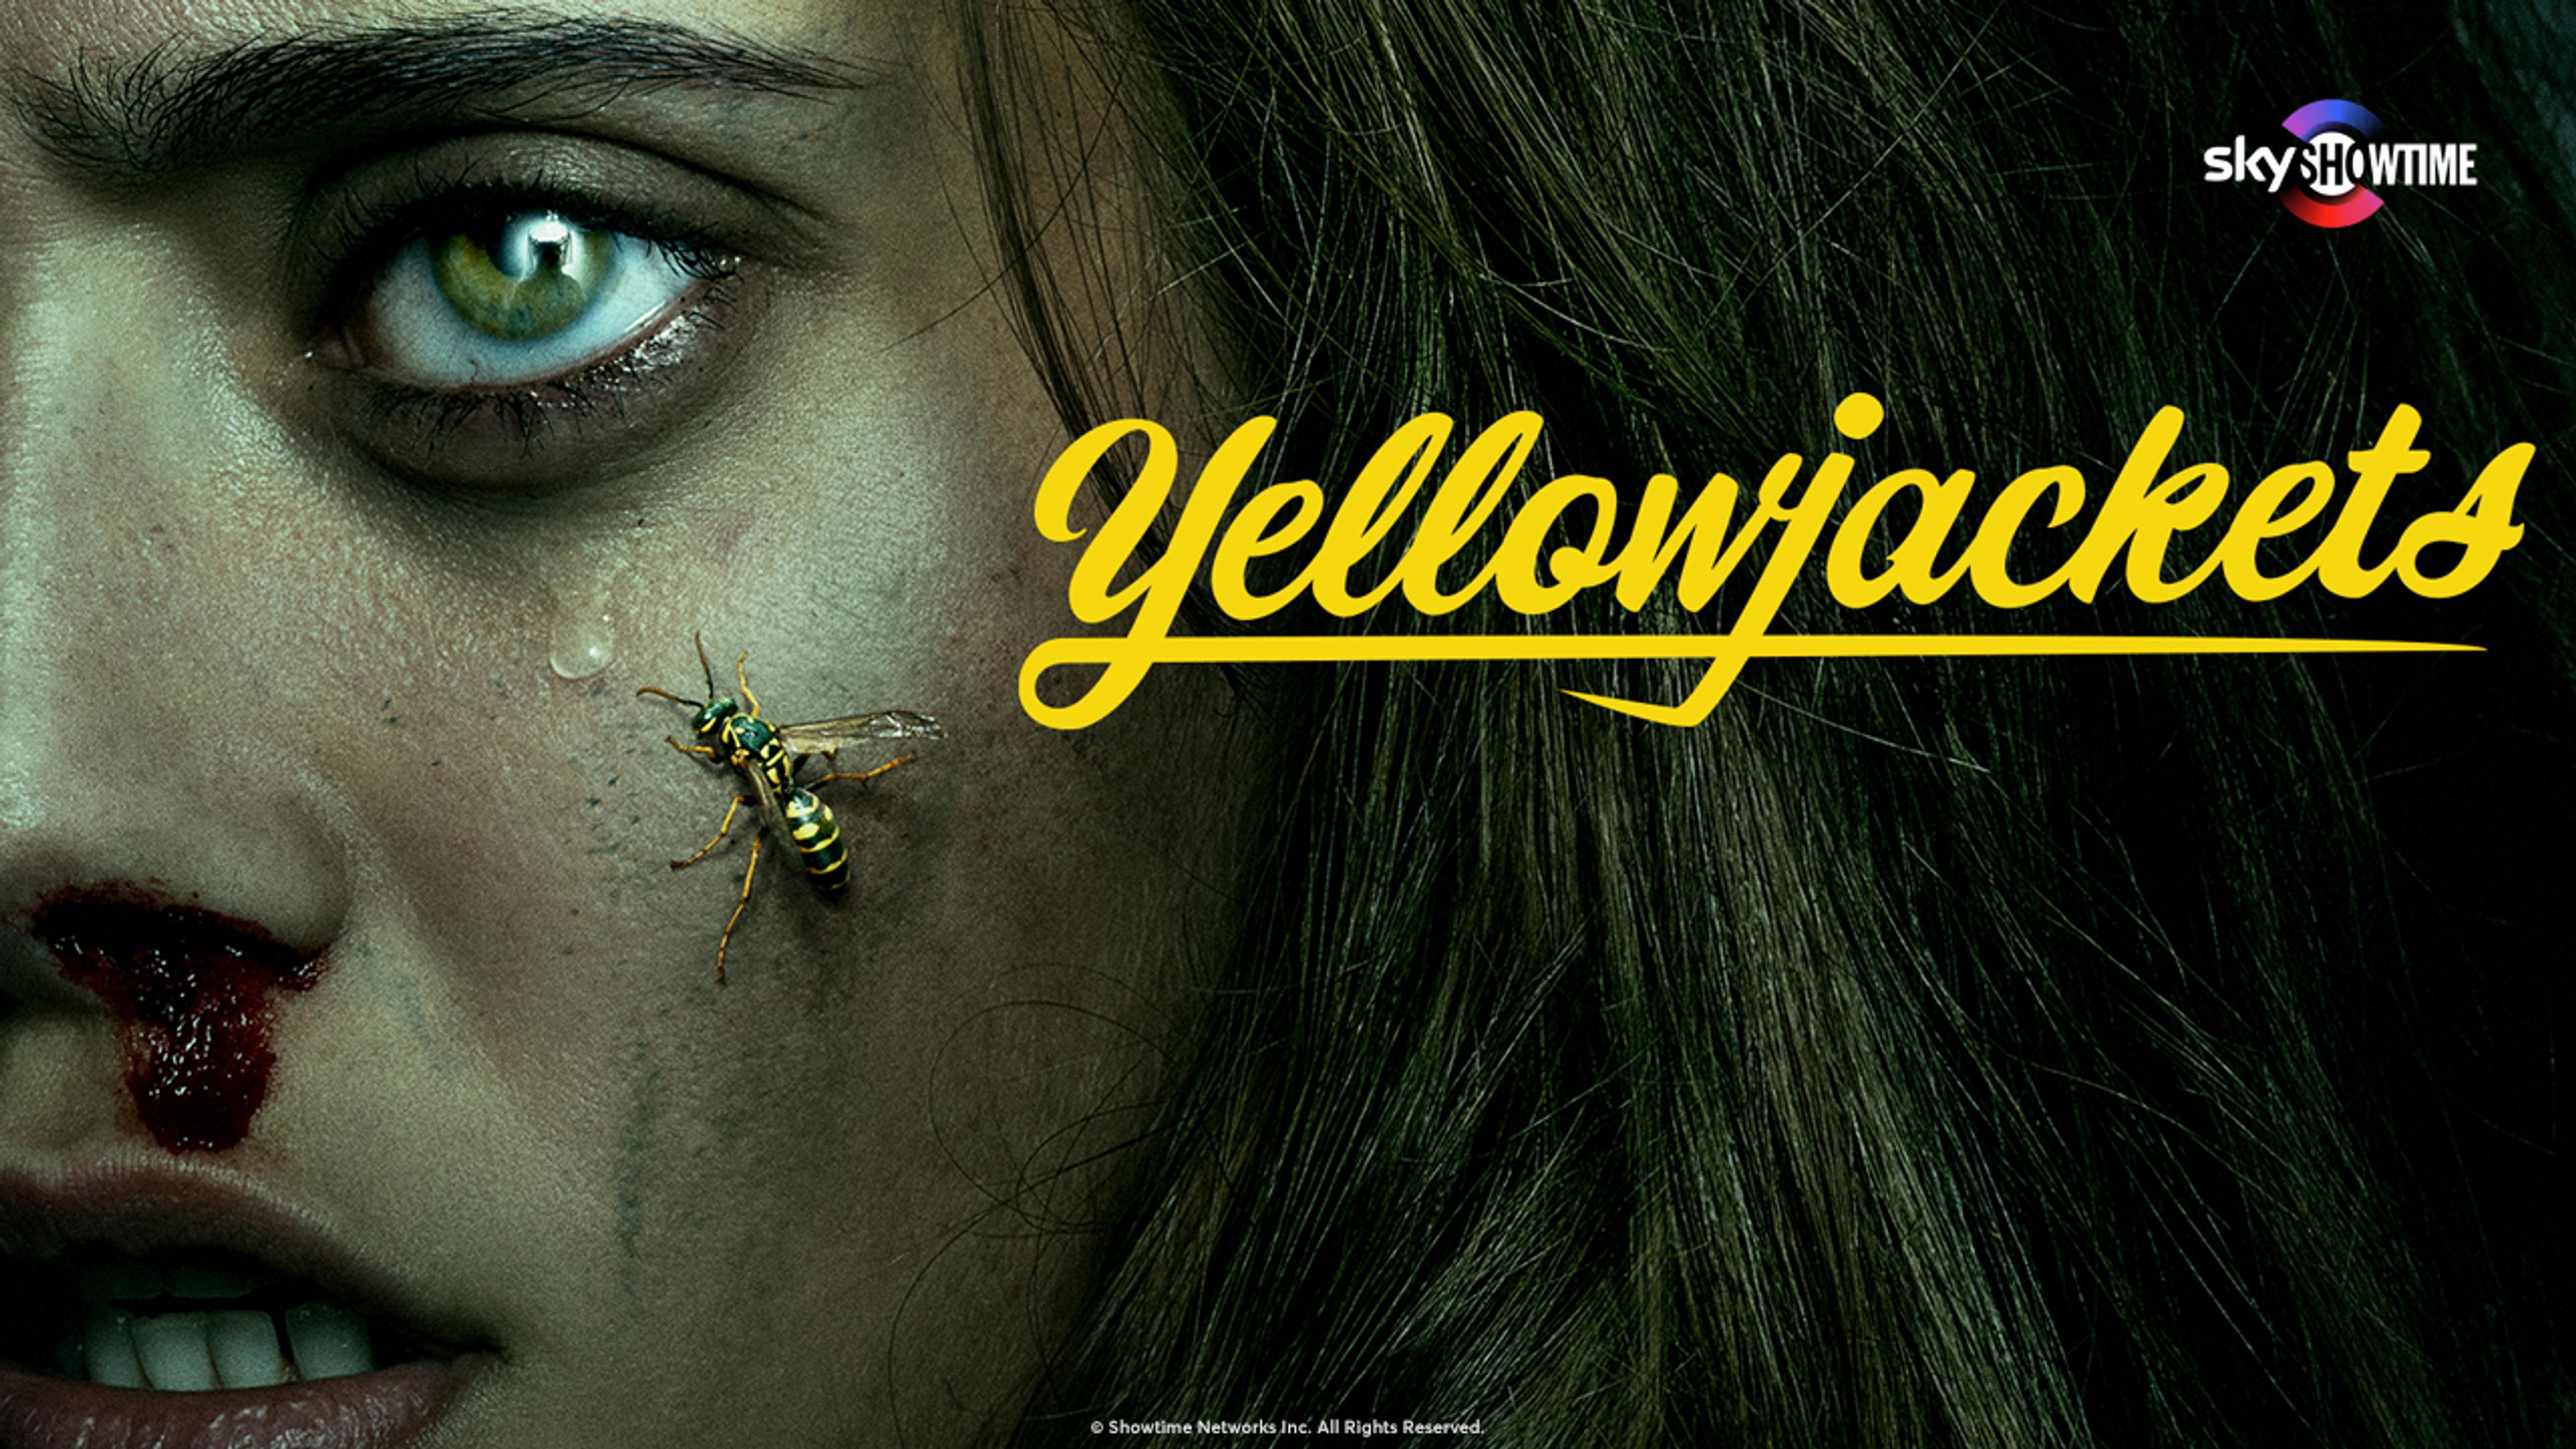 Poster for serien Yellowjackets på SkyShowtime. Blodig kvinne med tåre og veps på kinnet ser mot oss.